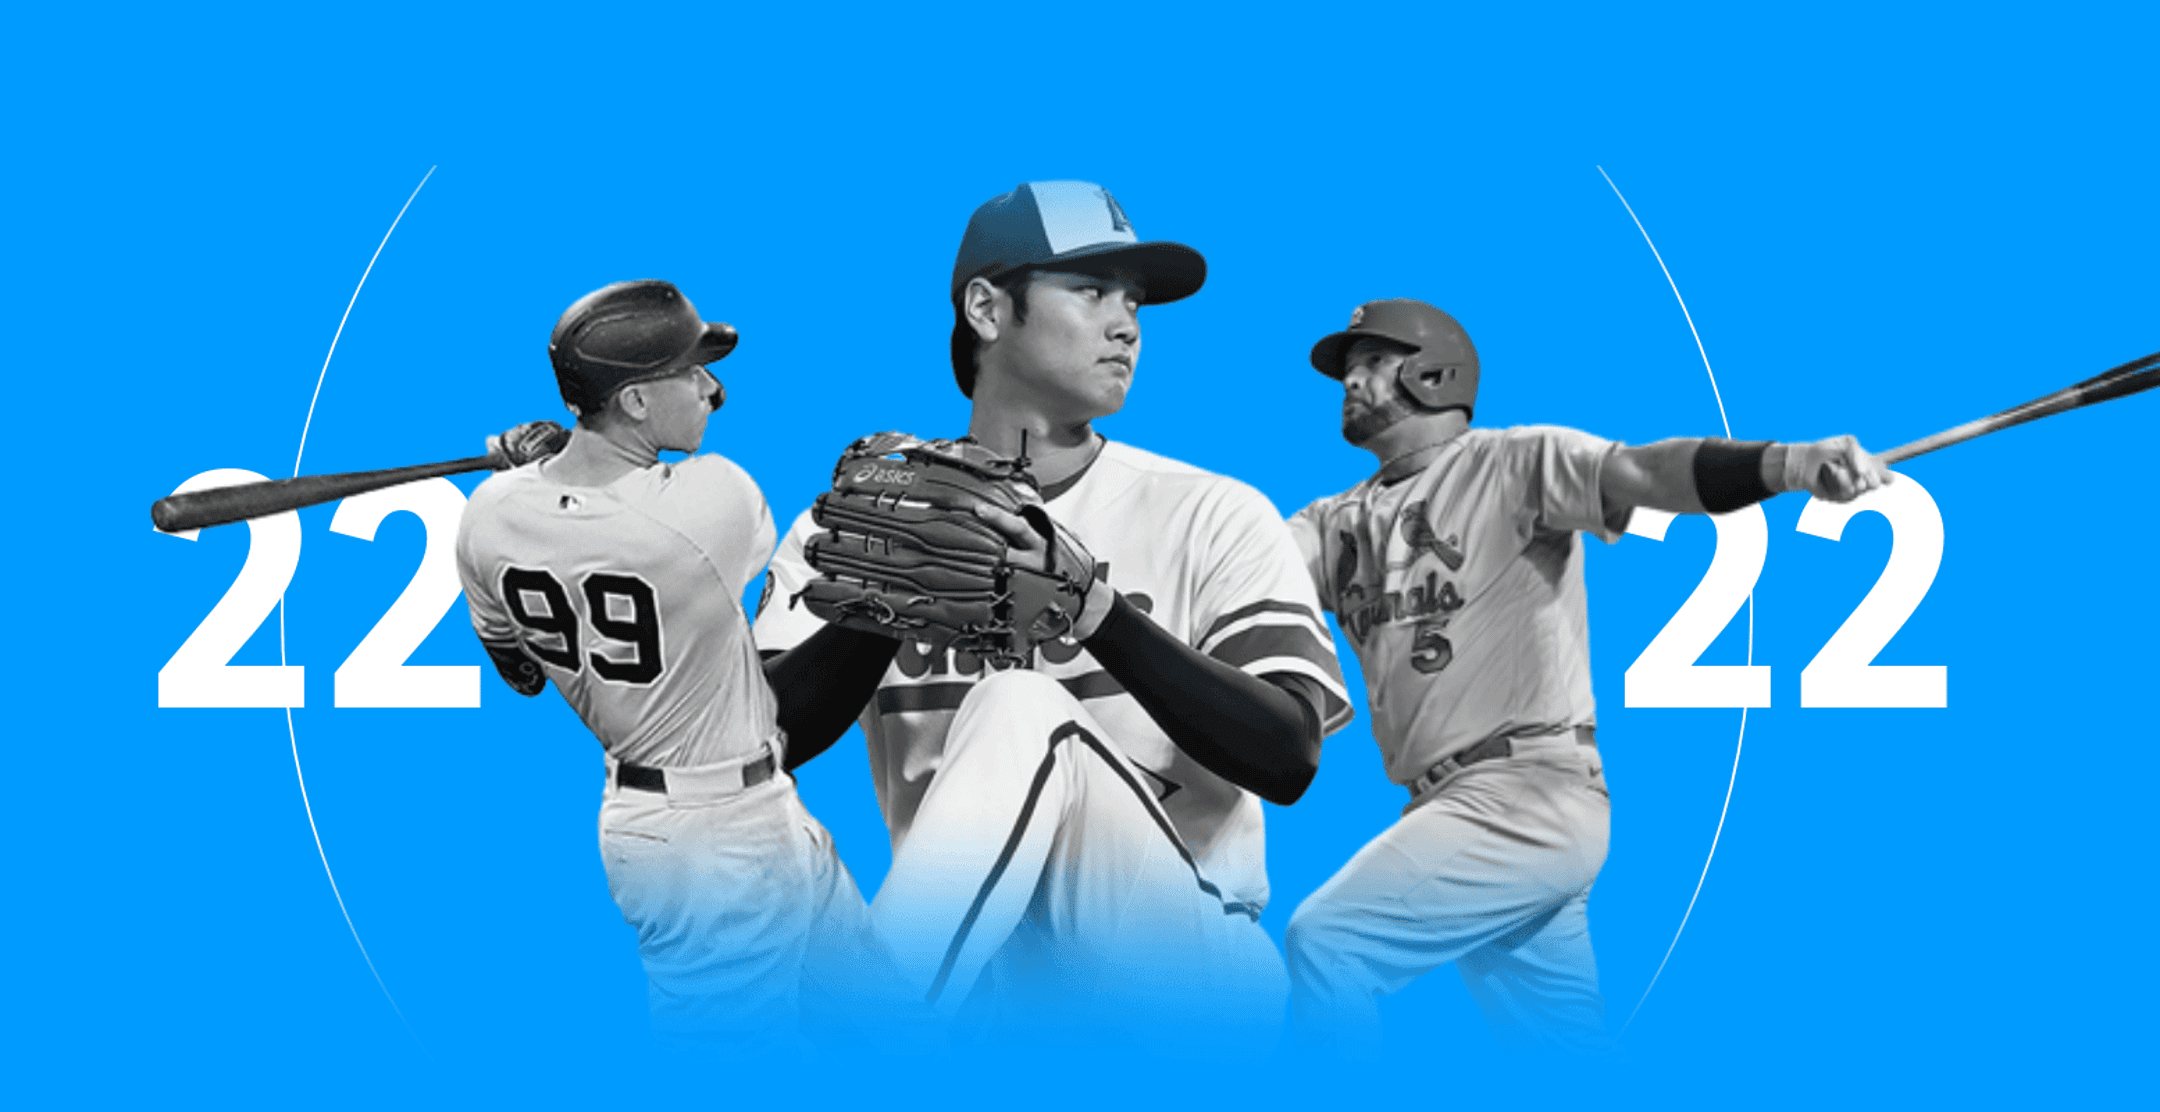 2022 Records: Judge, Pujols top the list historic MLB moments